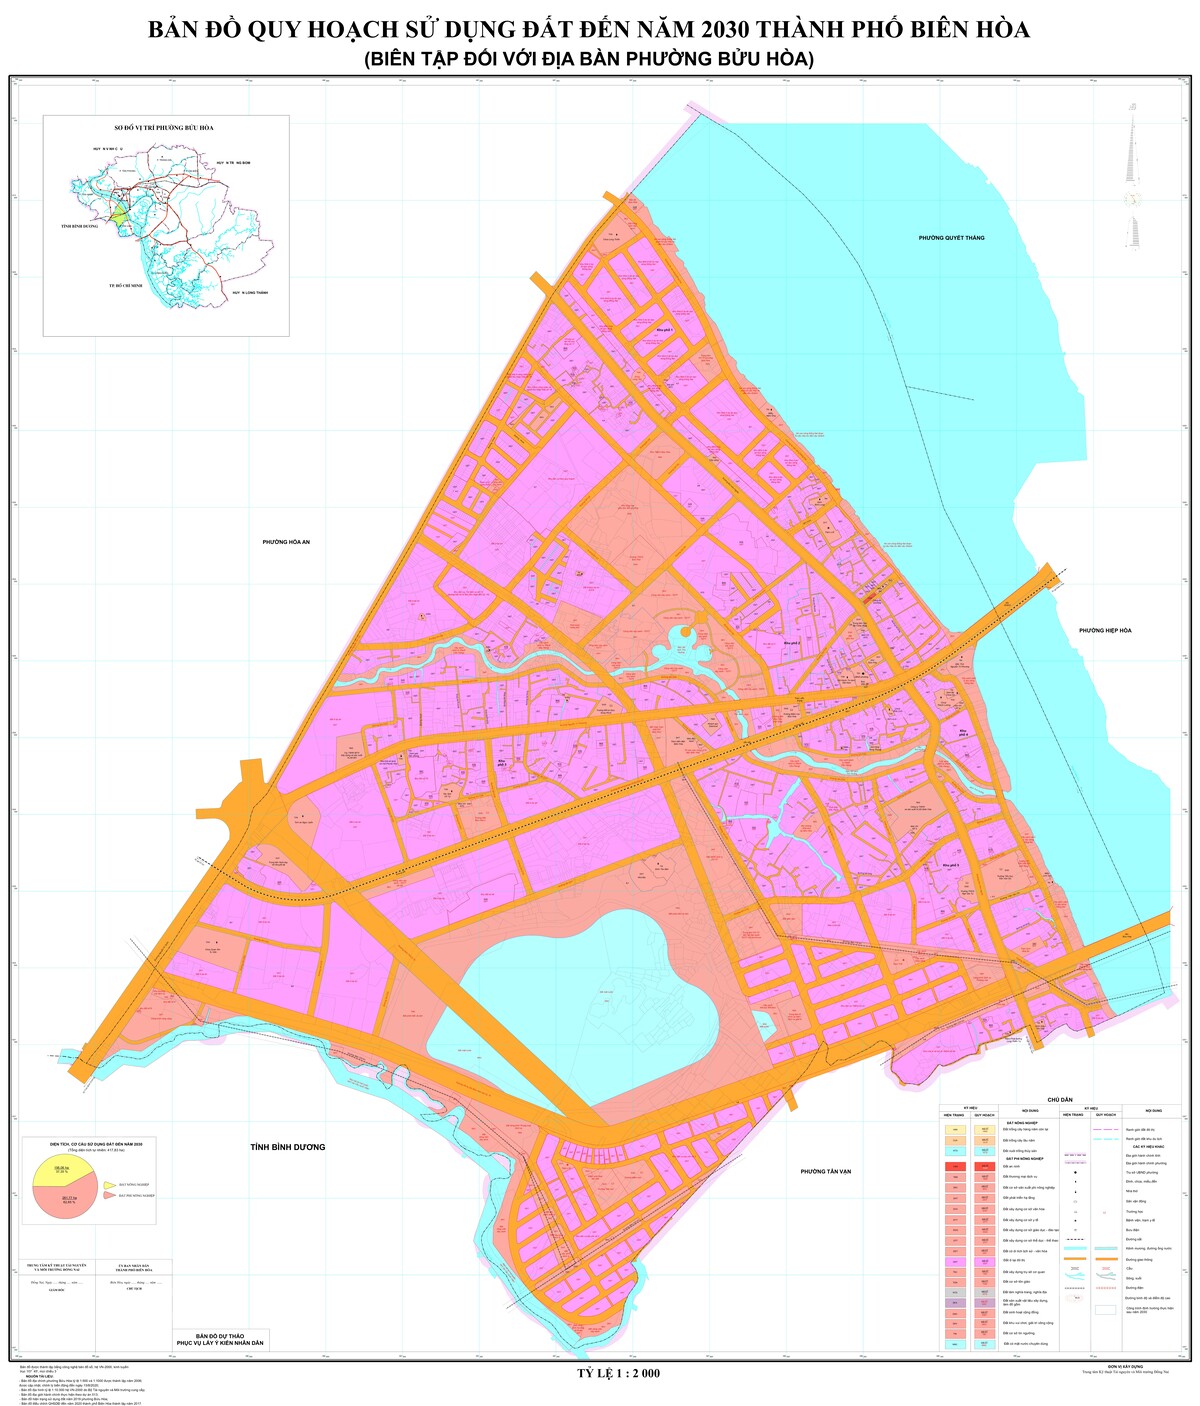 Bản đồ quy hoạch phường Bửu Hòa, thành phố Biên Hòa, tỉnh Đồng Nai đến năm 2030